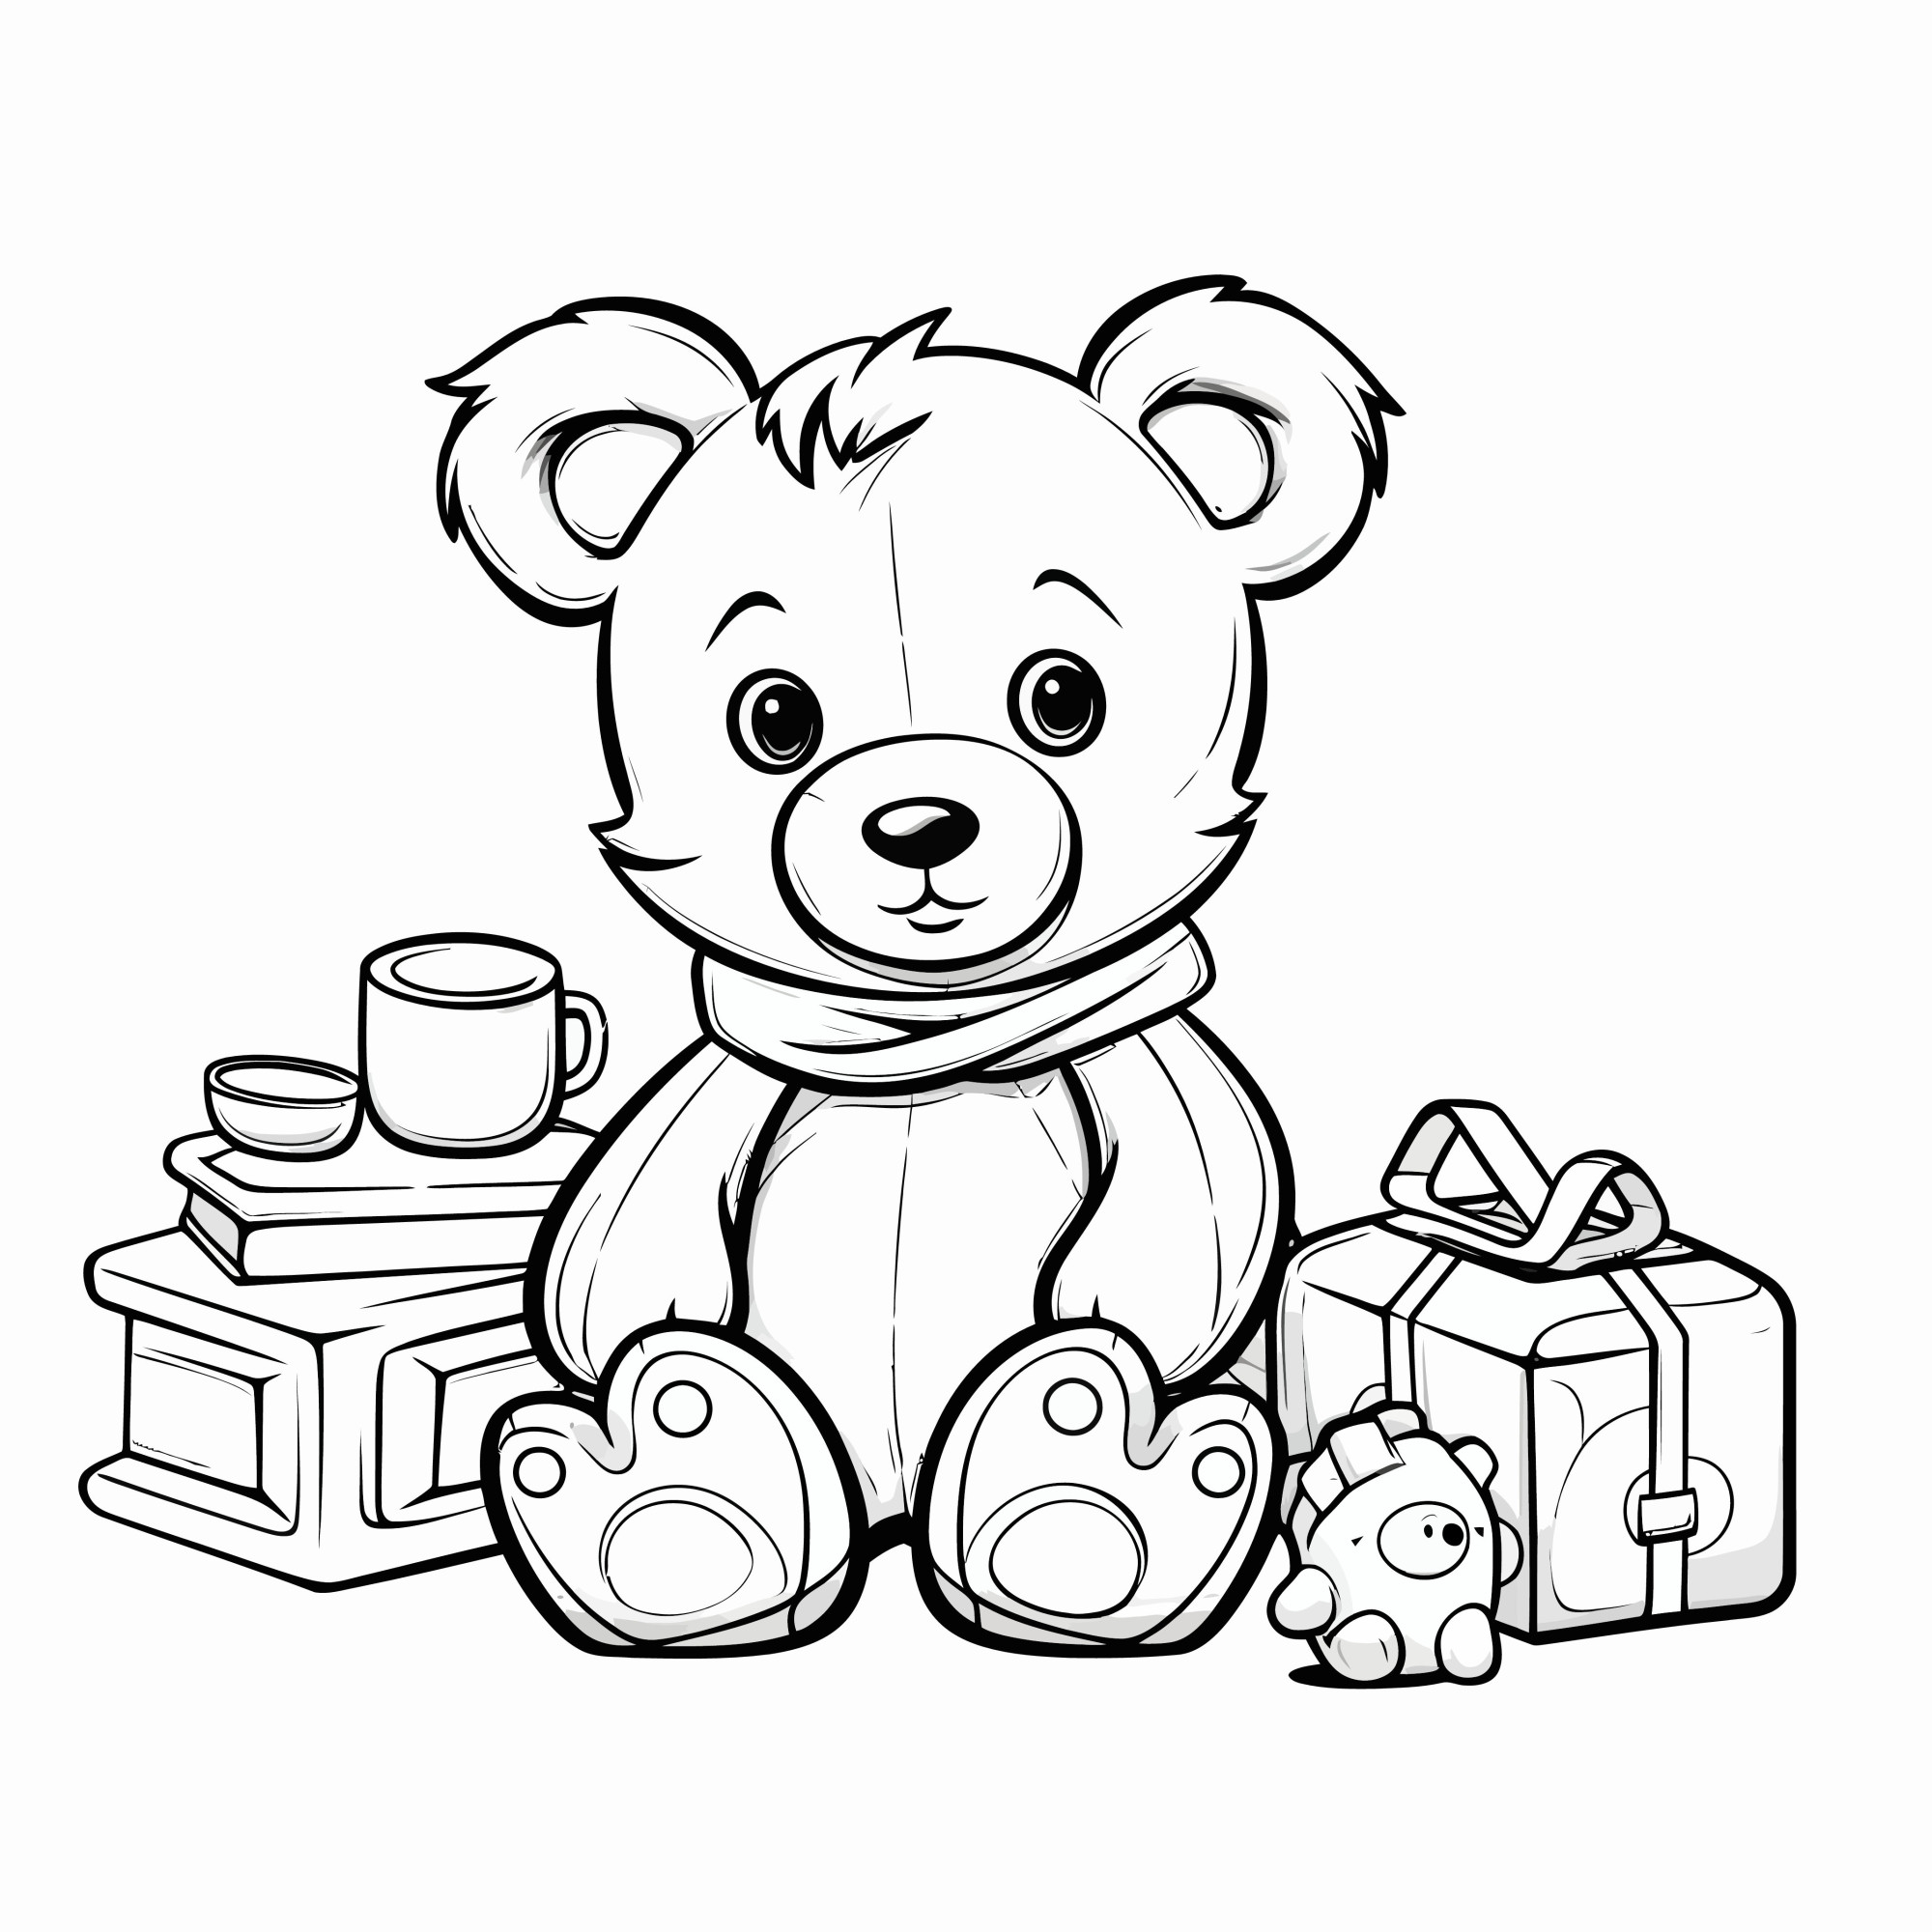 Раскраска для детей: плюшевый медведь с игрушками